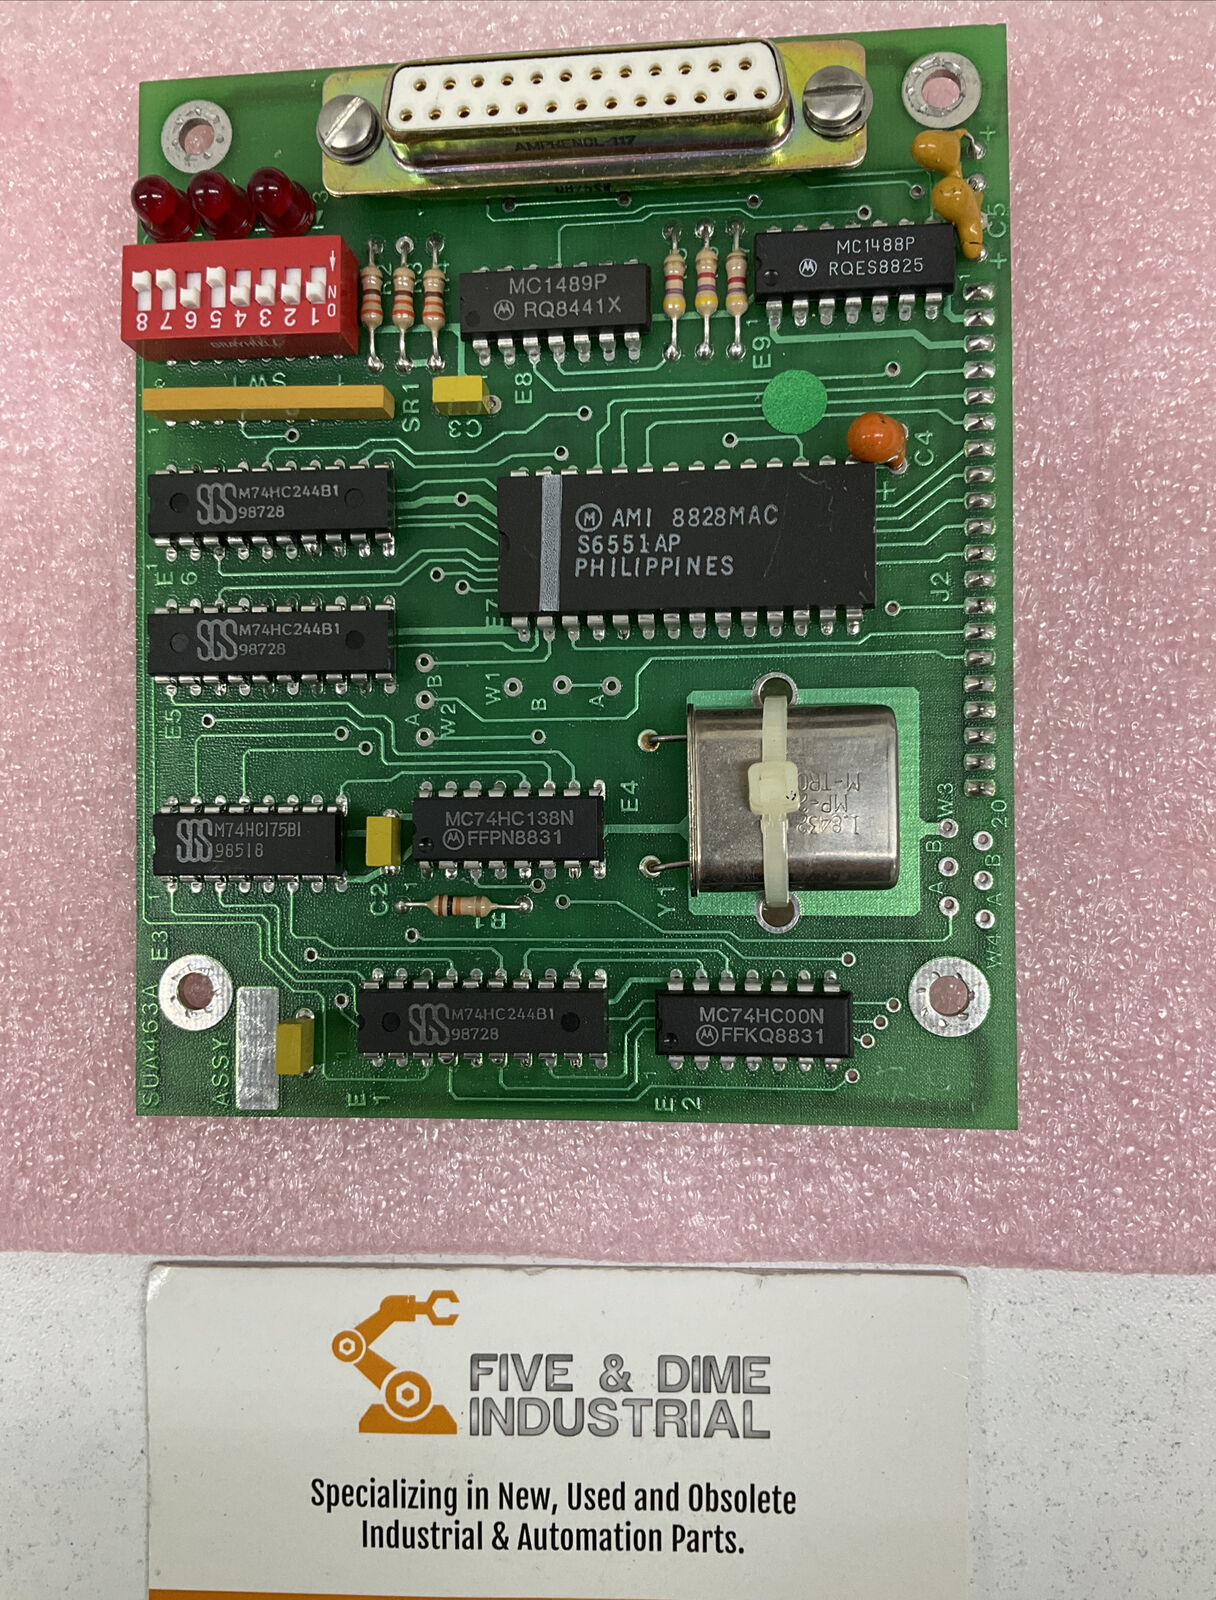 HydePark SUA463A Circuit Board PCB (CB106)